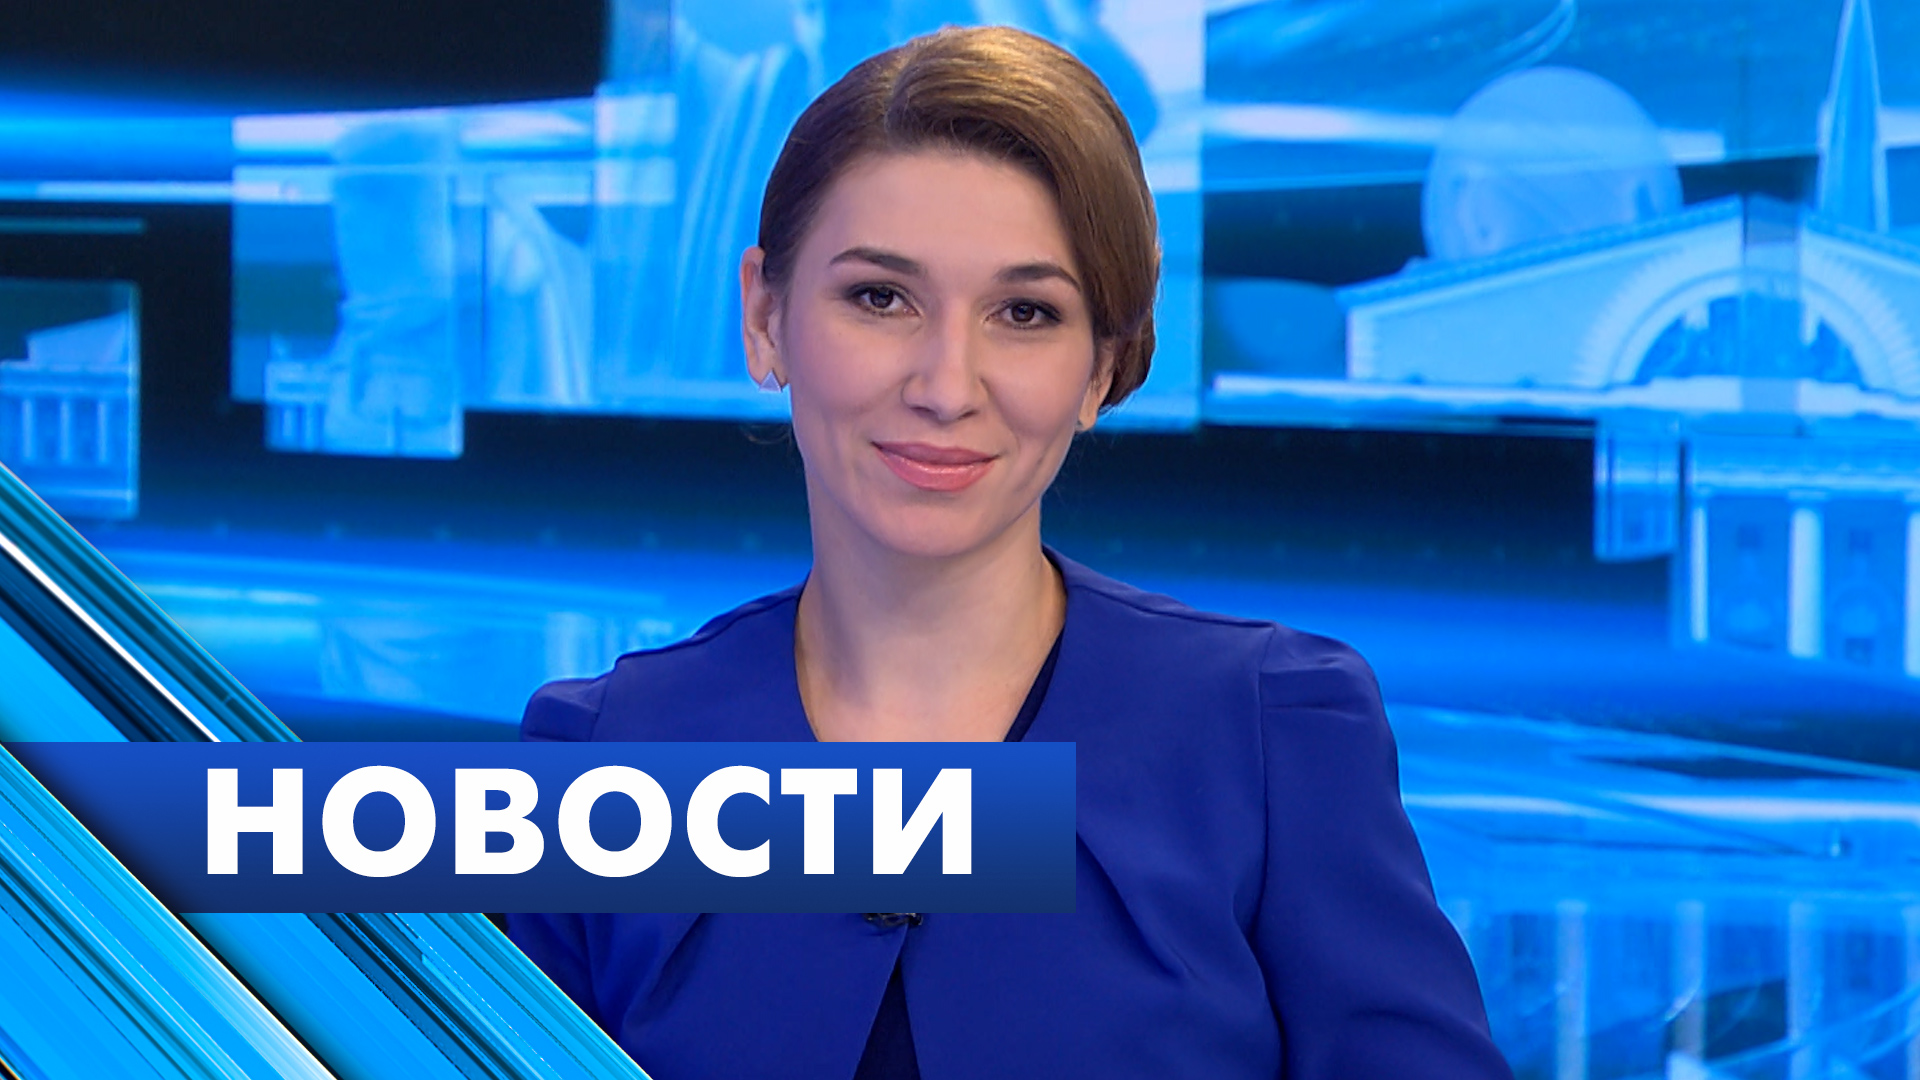 Главные новости Петербурга / 30 января